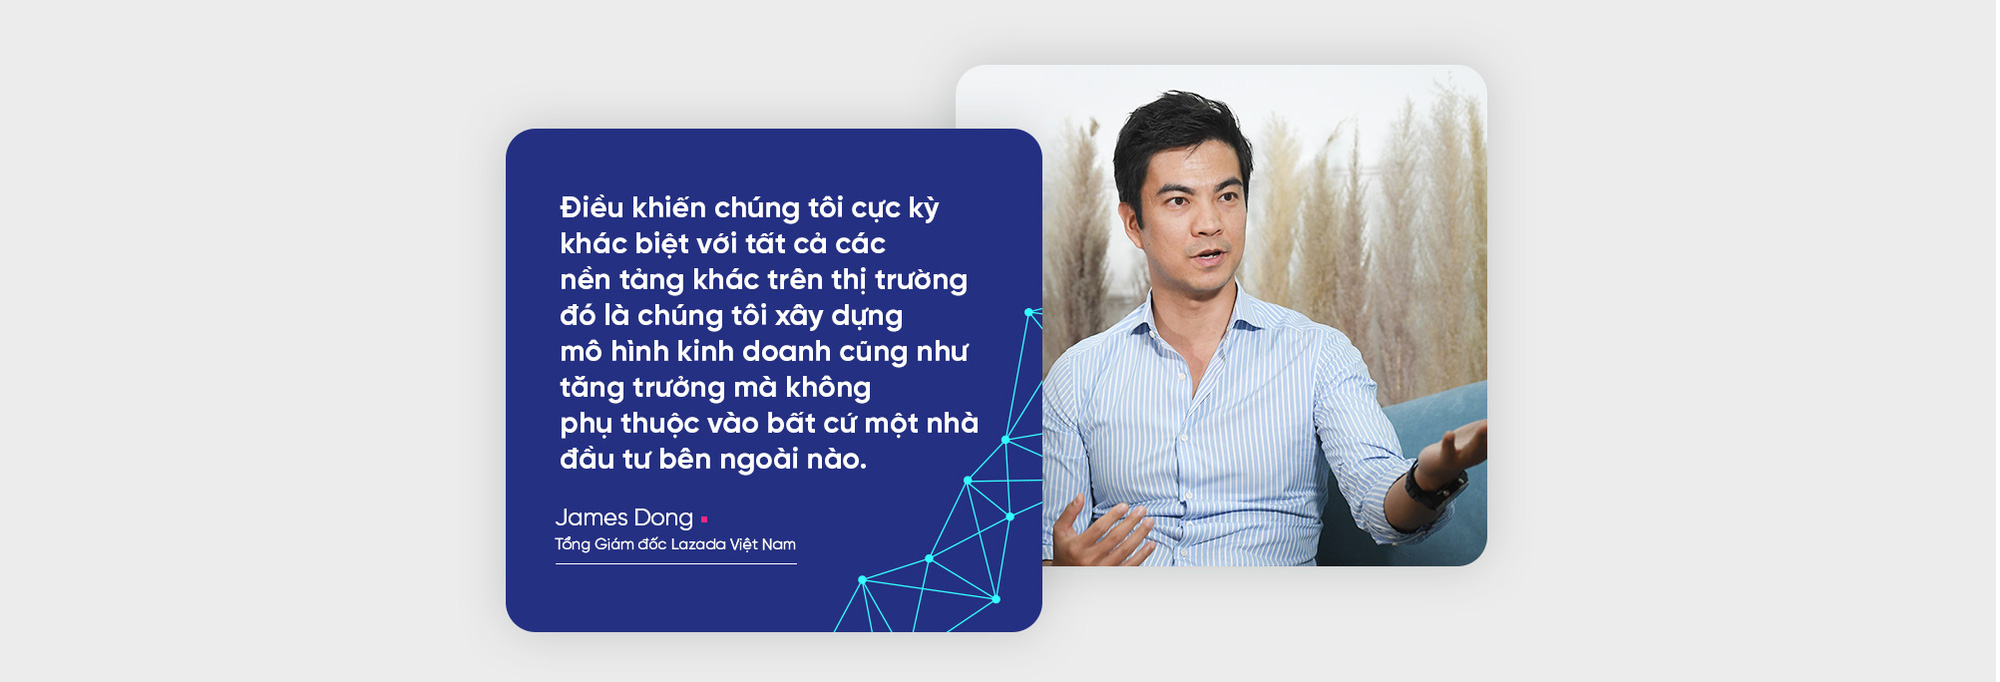 CEO Lazada Việt Nam dự báo gì về cuộc đua cạnh tranh của các sàn thương mại điện tử? - Ảnh 3.